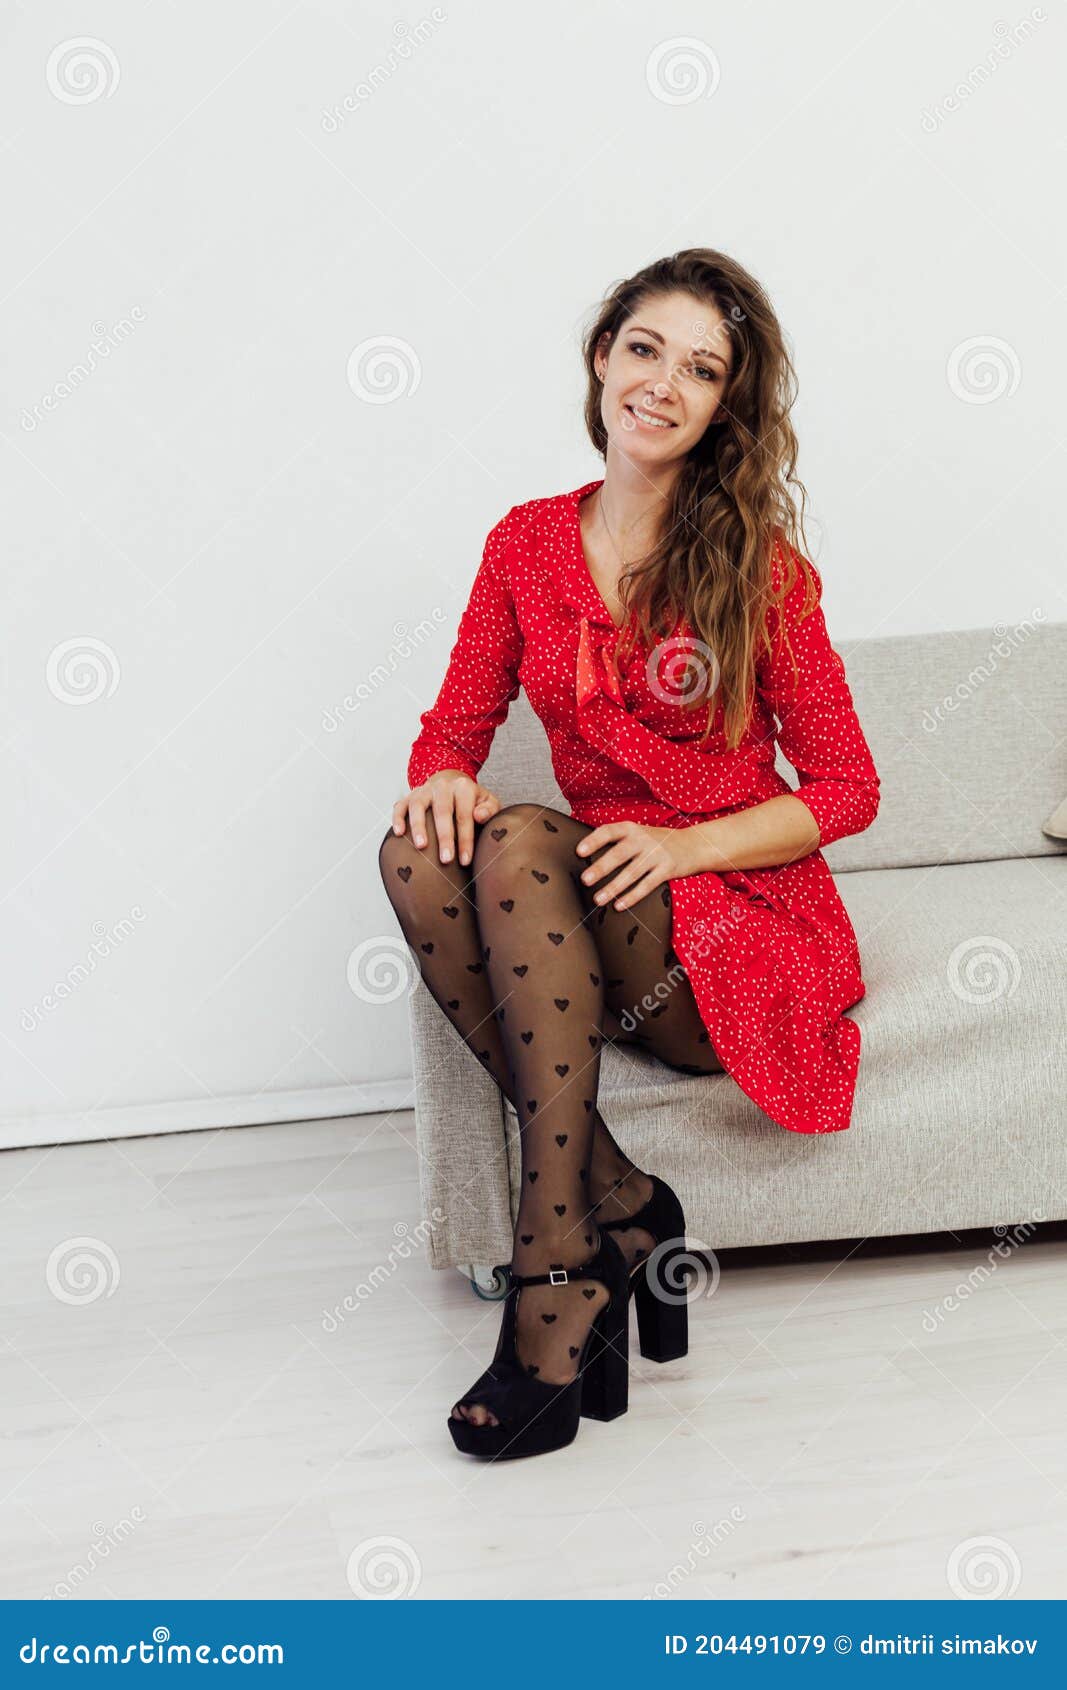 Ejercicio Reducción de precios tenis Hermosa Mujer De Moda En Un Vestido Rojo Y Medias Negras Imagen de archivo  - Imagen de atractivo, oscuro: 204491079